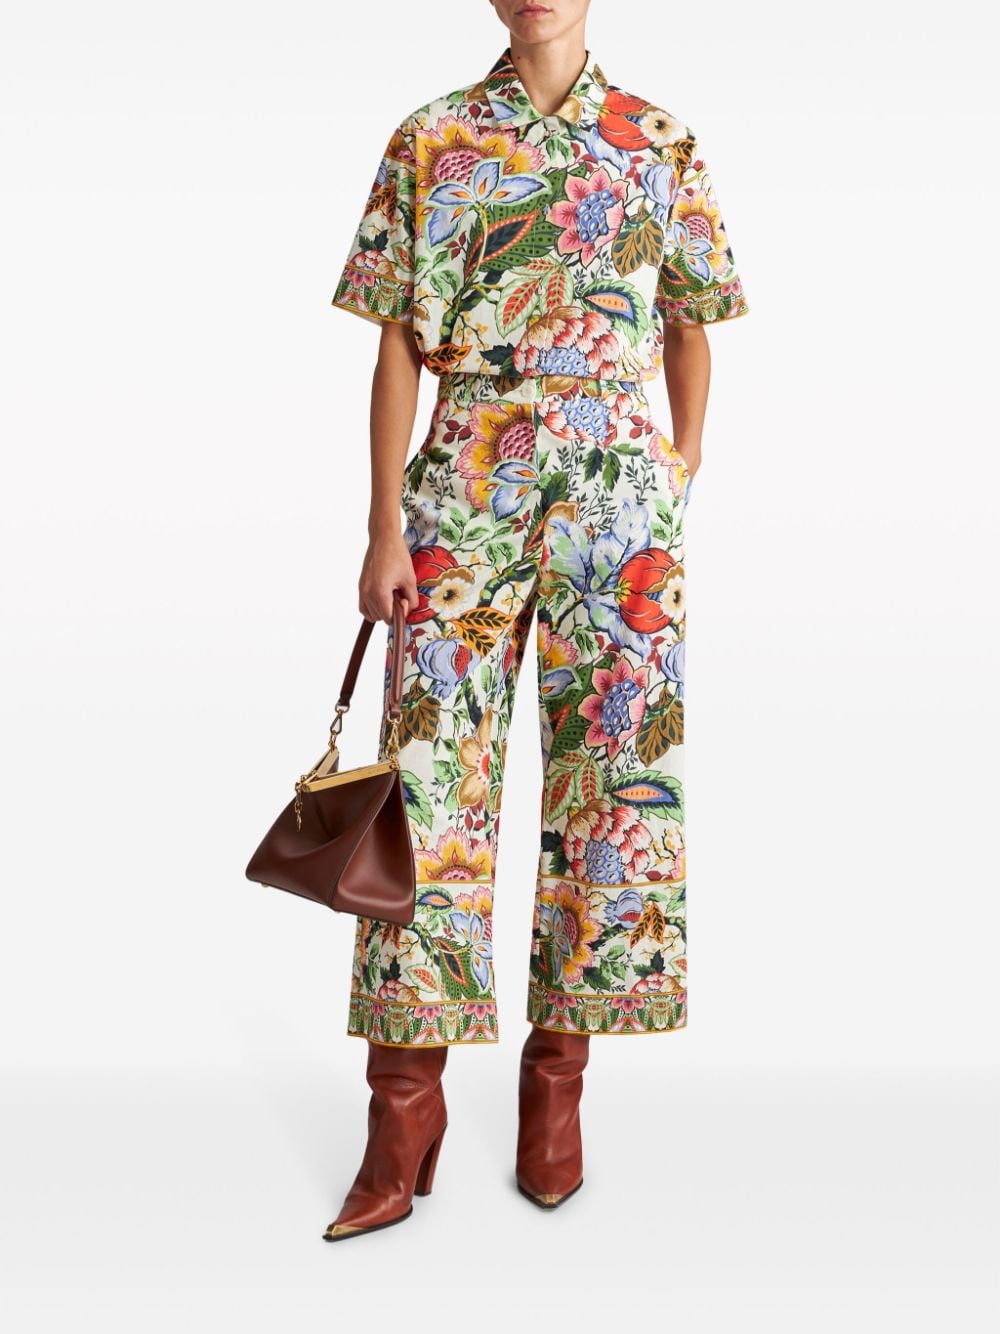 Multicolor floral print shirt